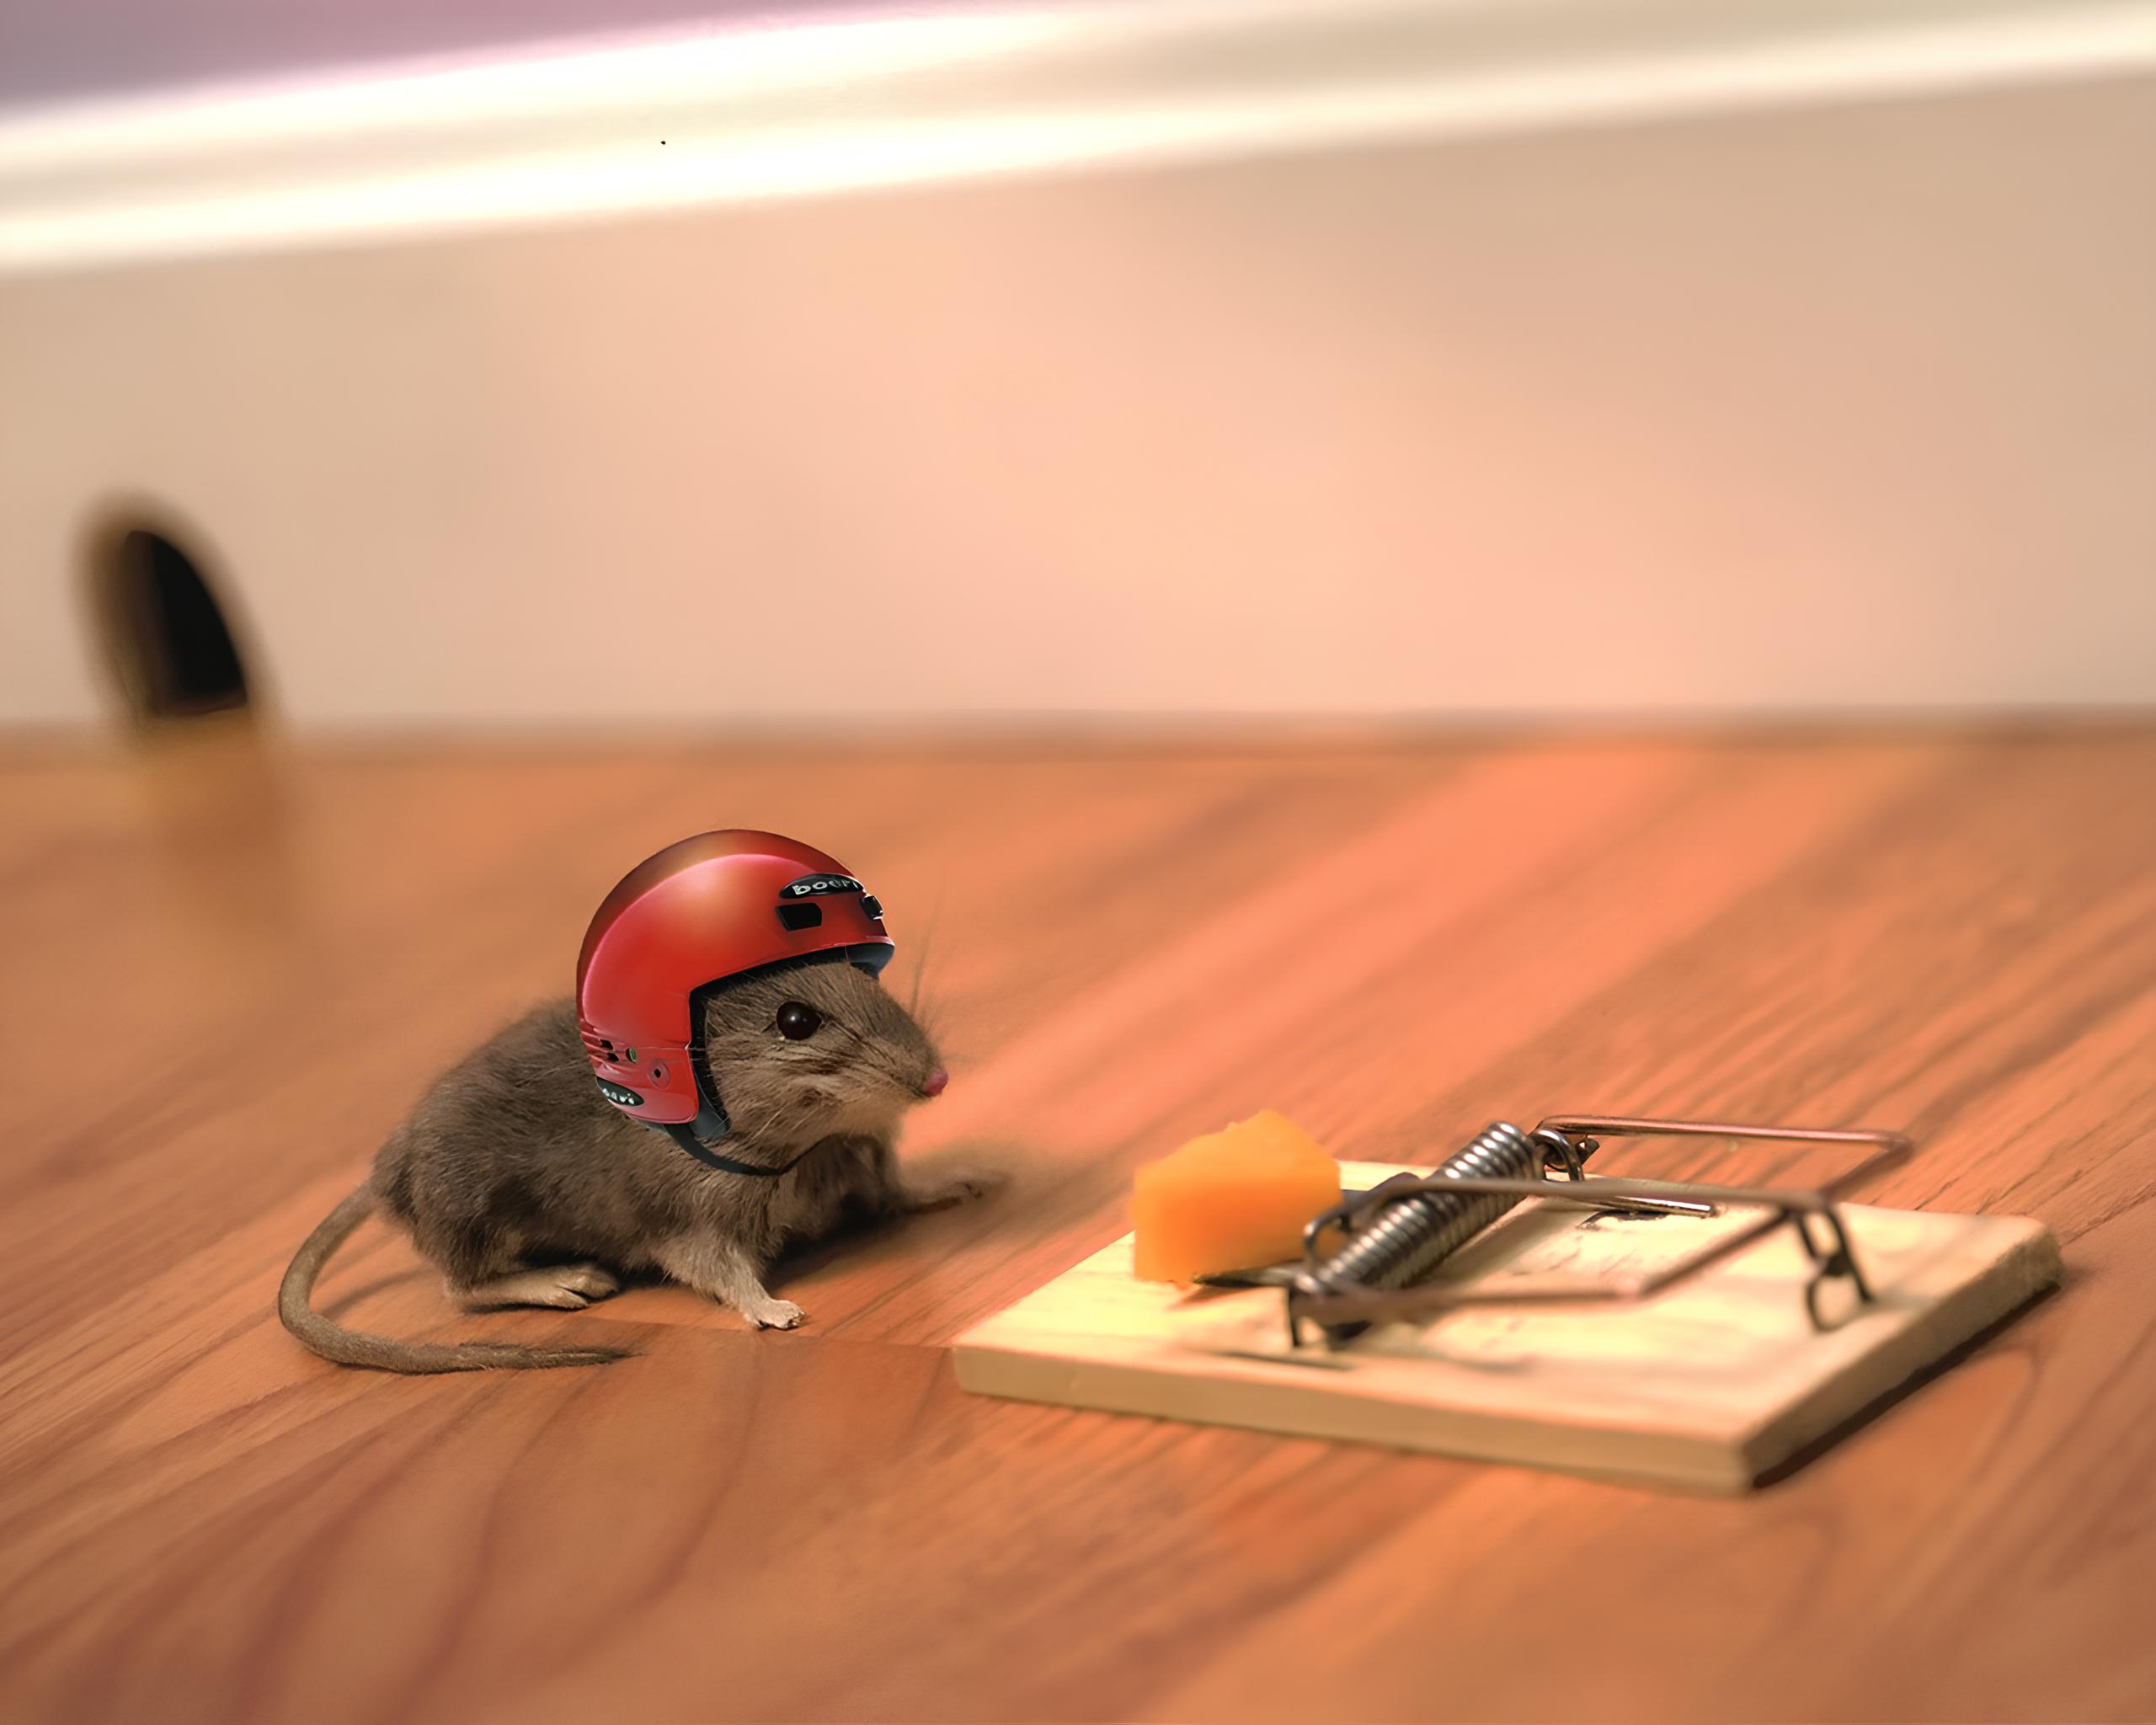 一只戴头盔的老鼠把捕鼠器上的奶酪扯了下来。